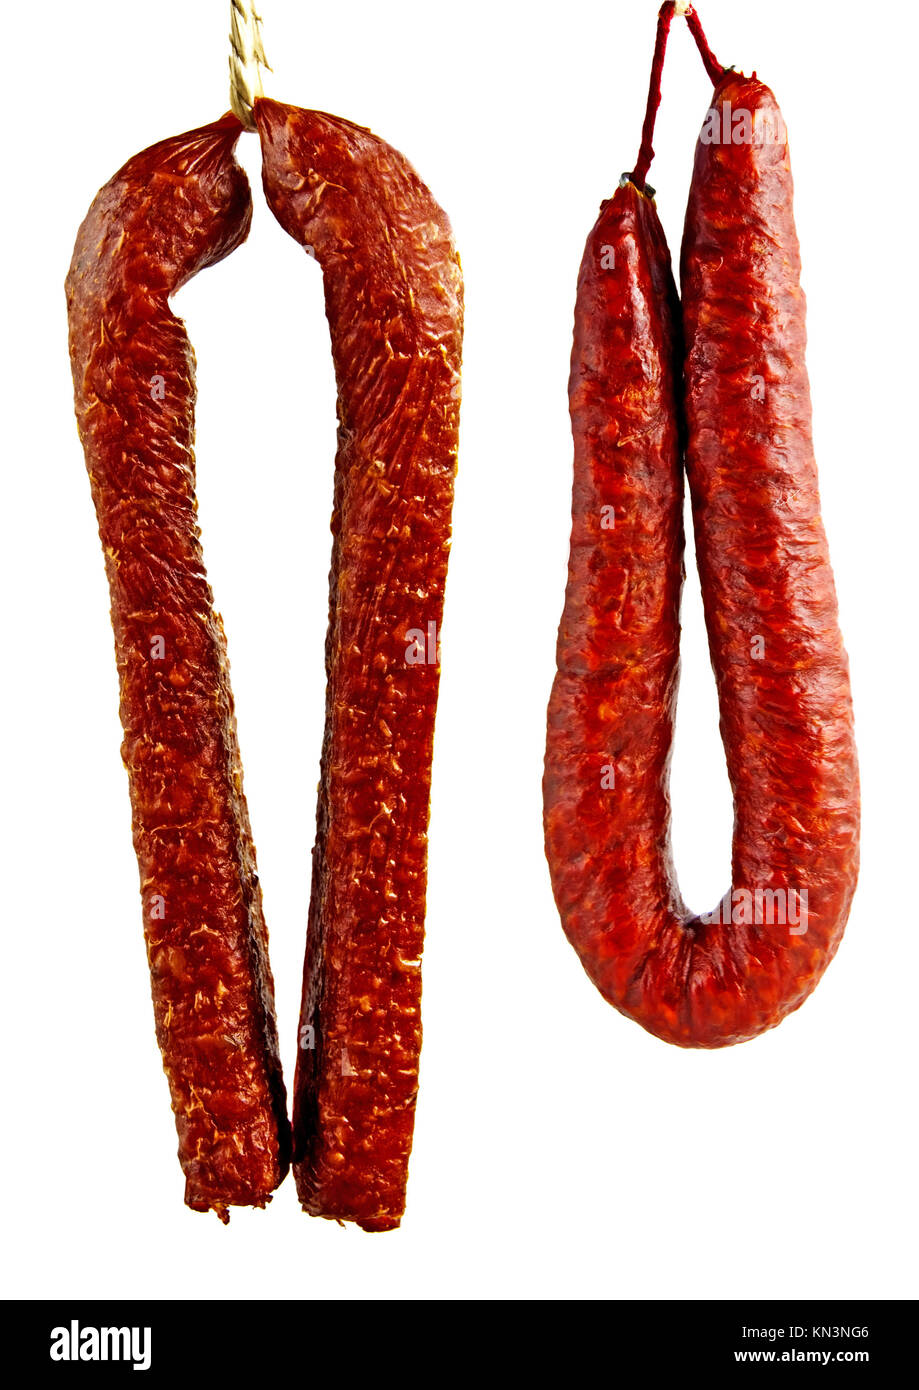 Chorizo und Landjäger. Stock Photo